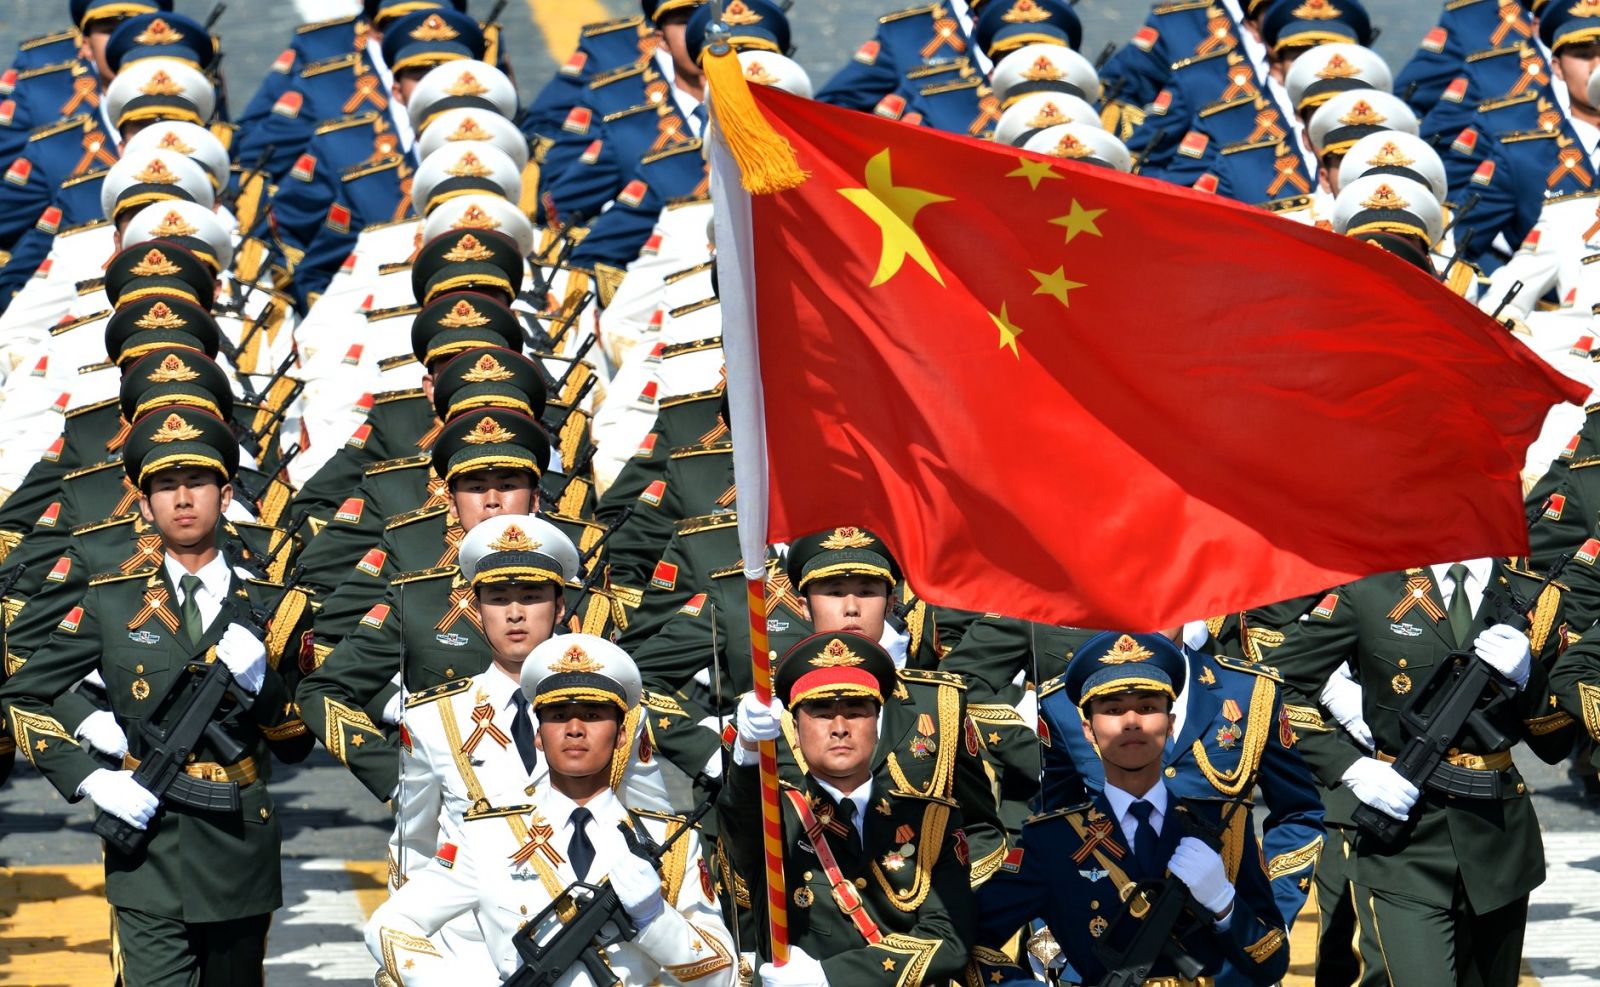 Polémica porque militares chinos reciben adiestramiento y educación en Canadá 